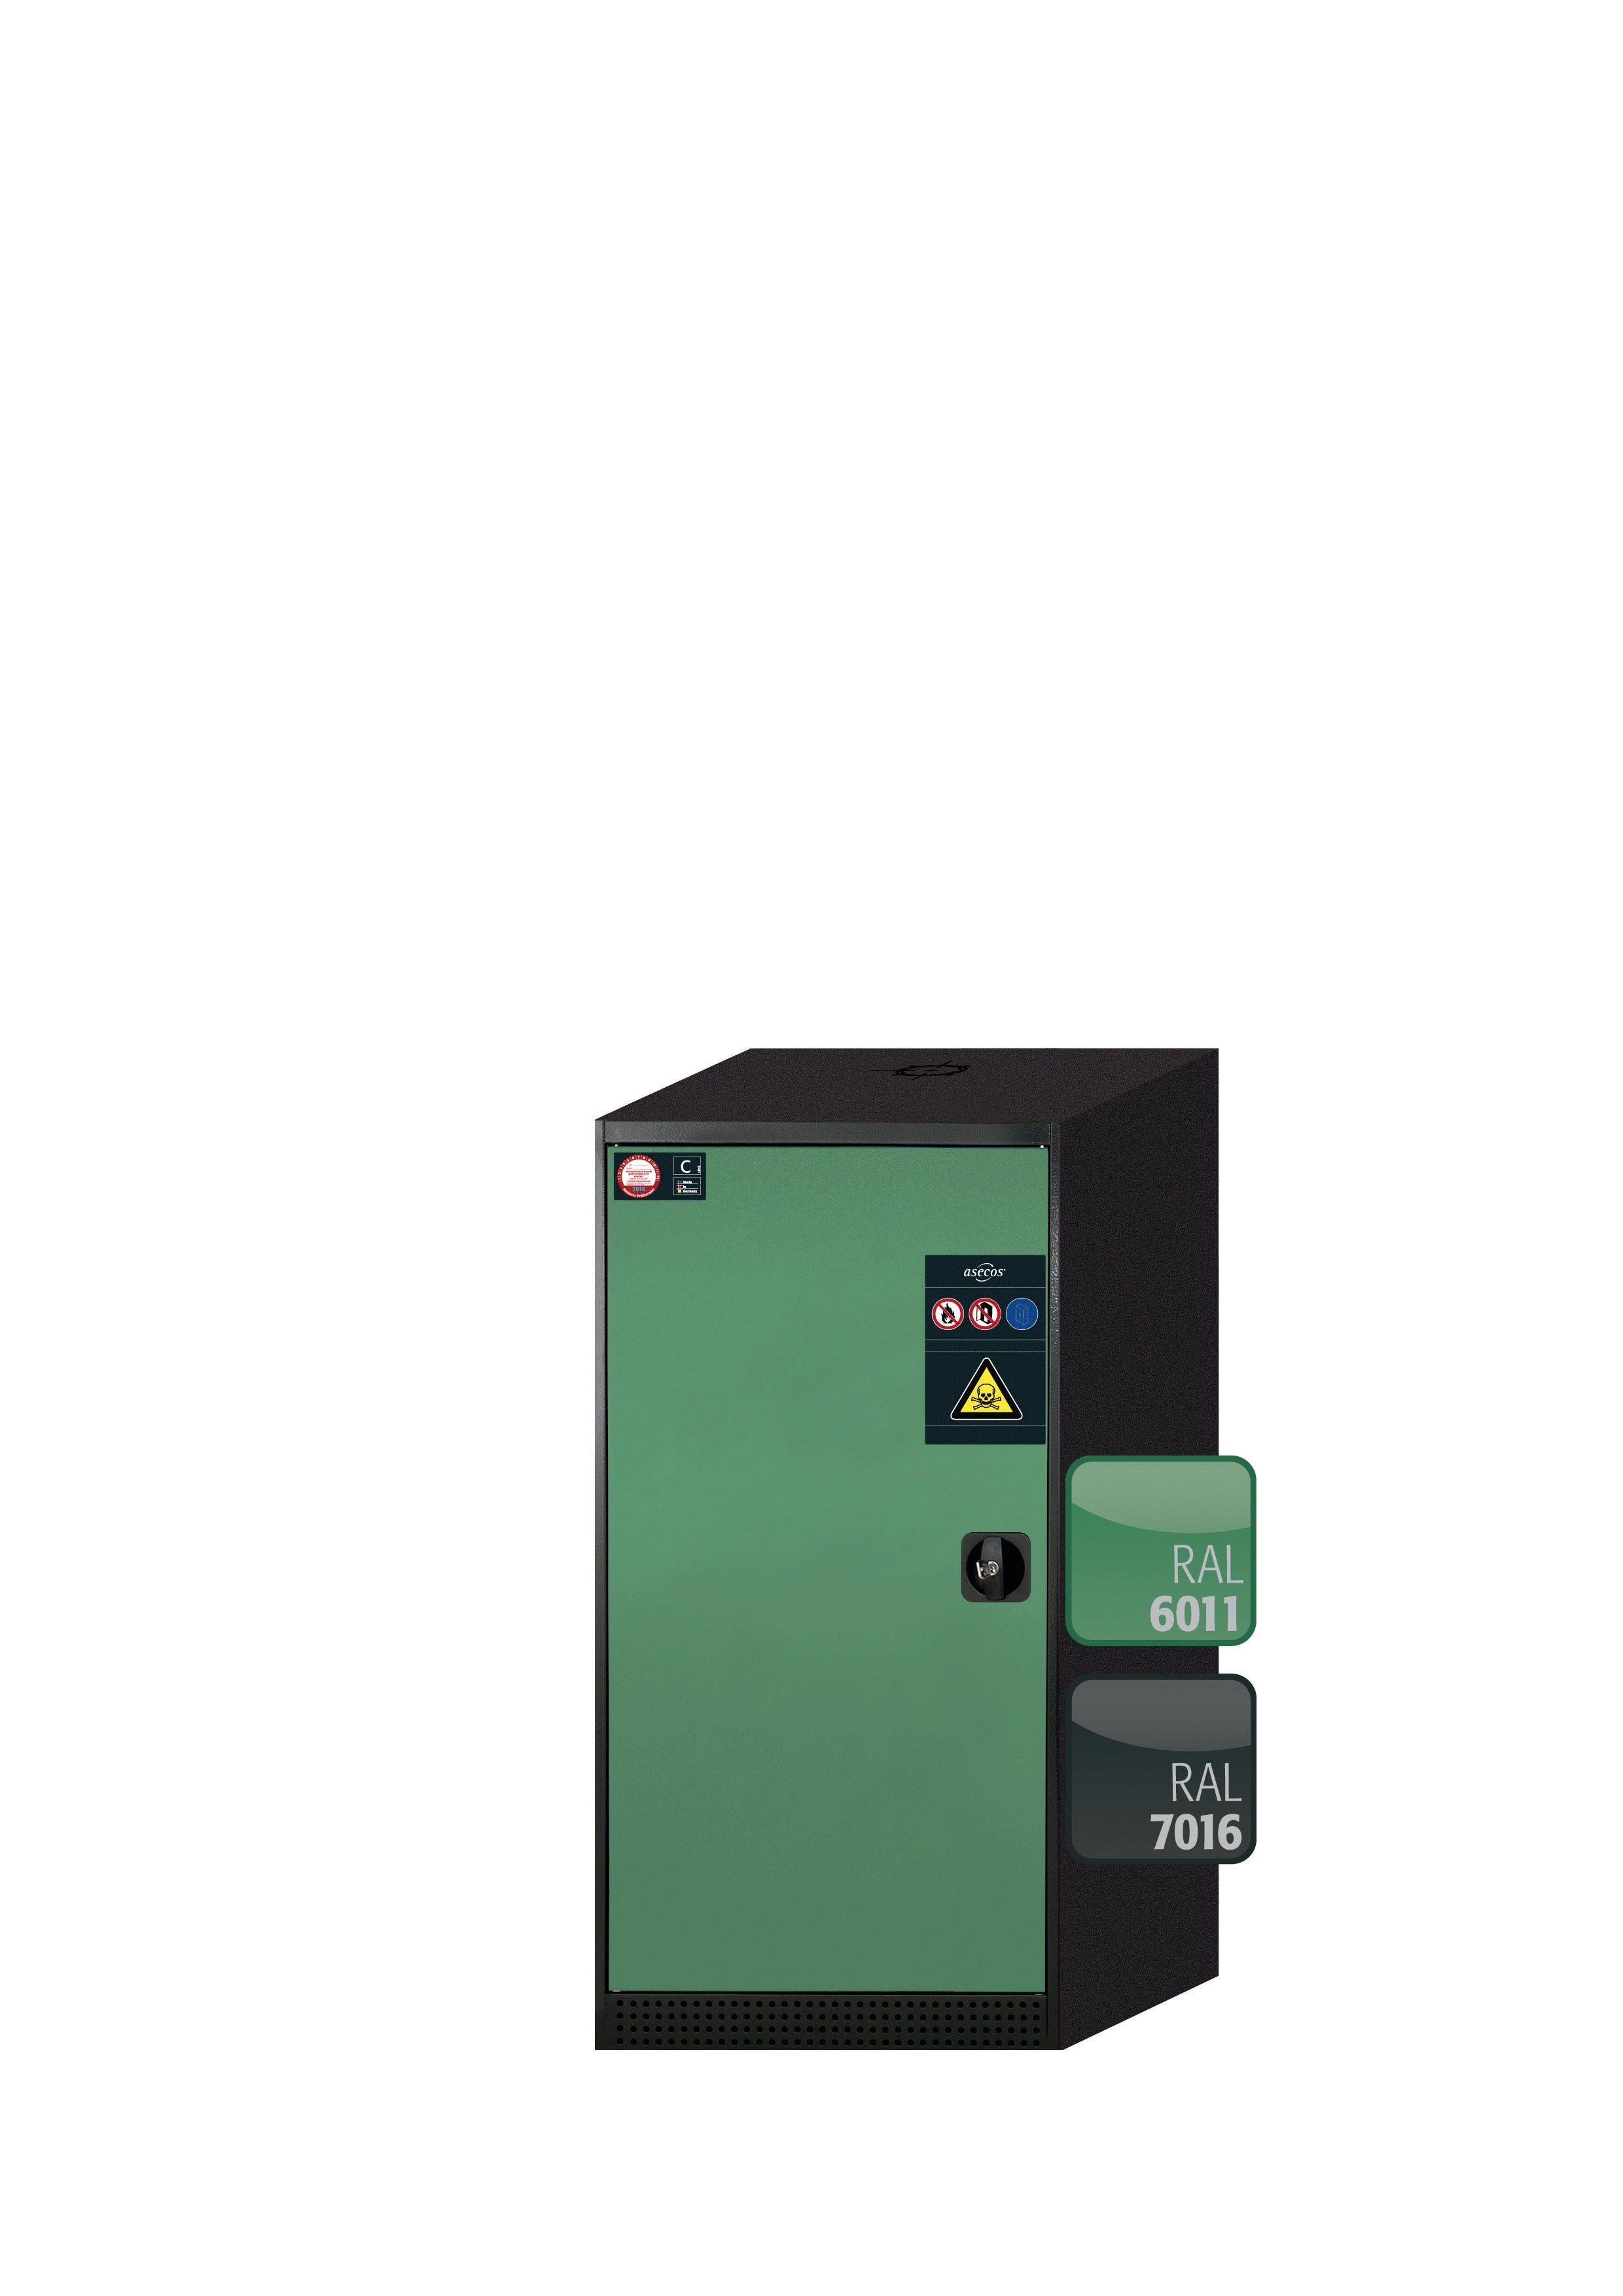 Armoire chimique CS-CLASSIC modèle CS.110.054 en vert réséda RAL 6011 avec 2x étagères standard (tôle d'acier)